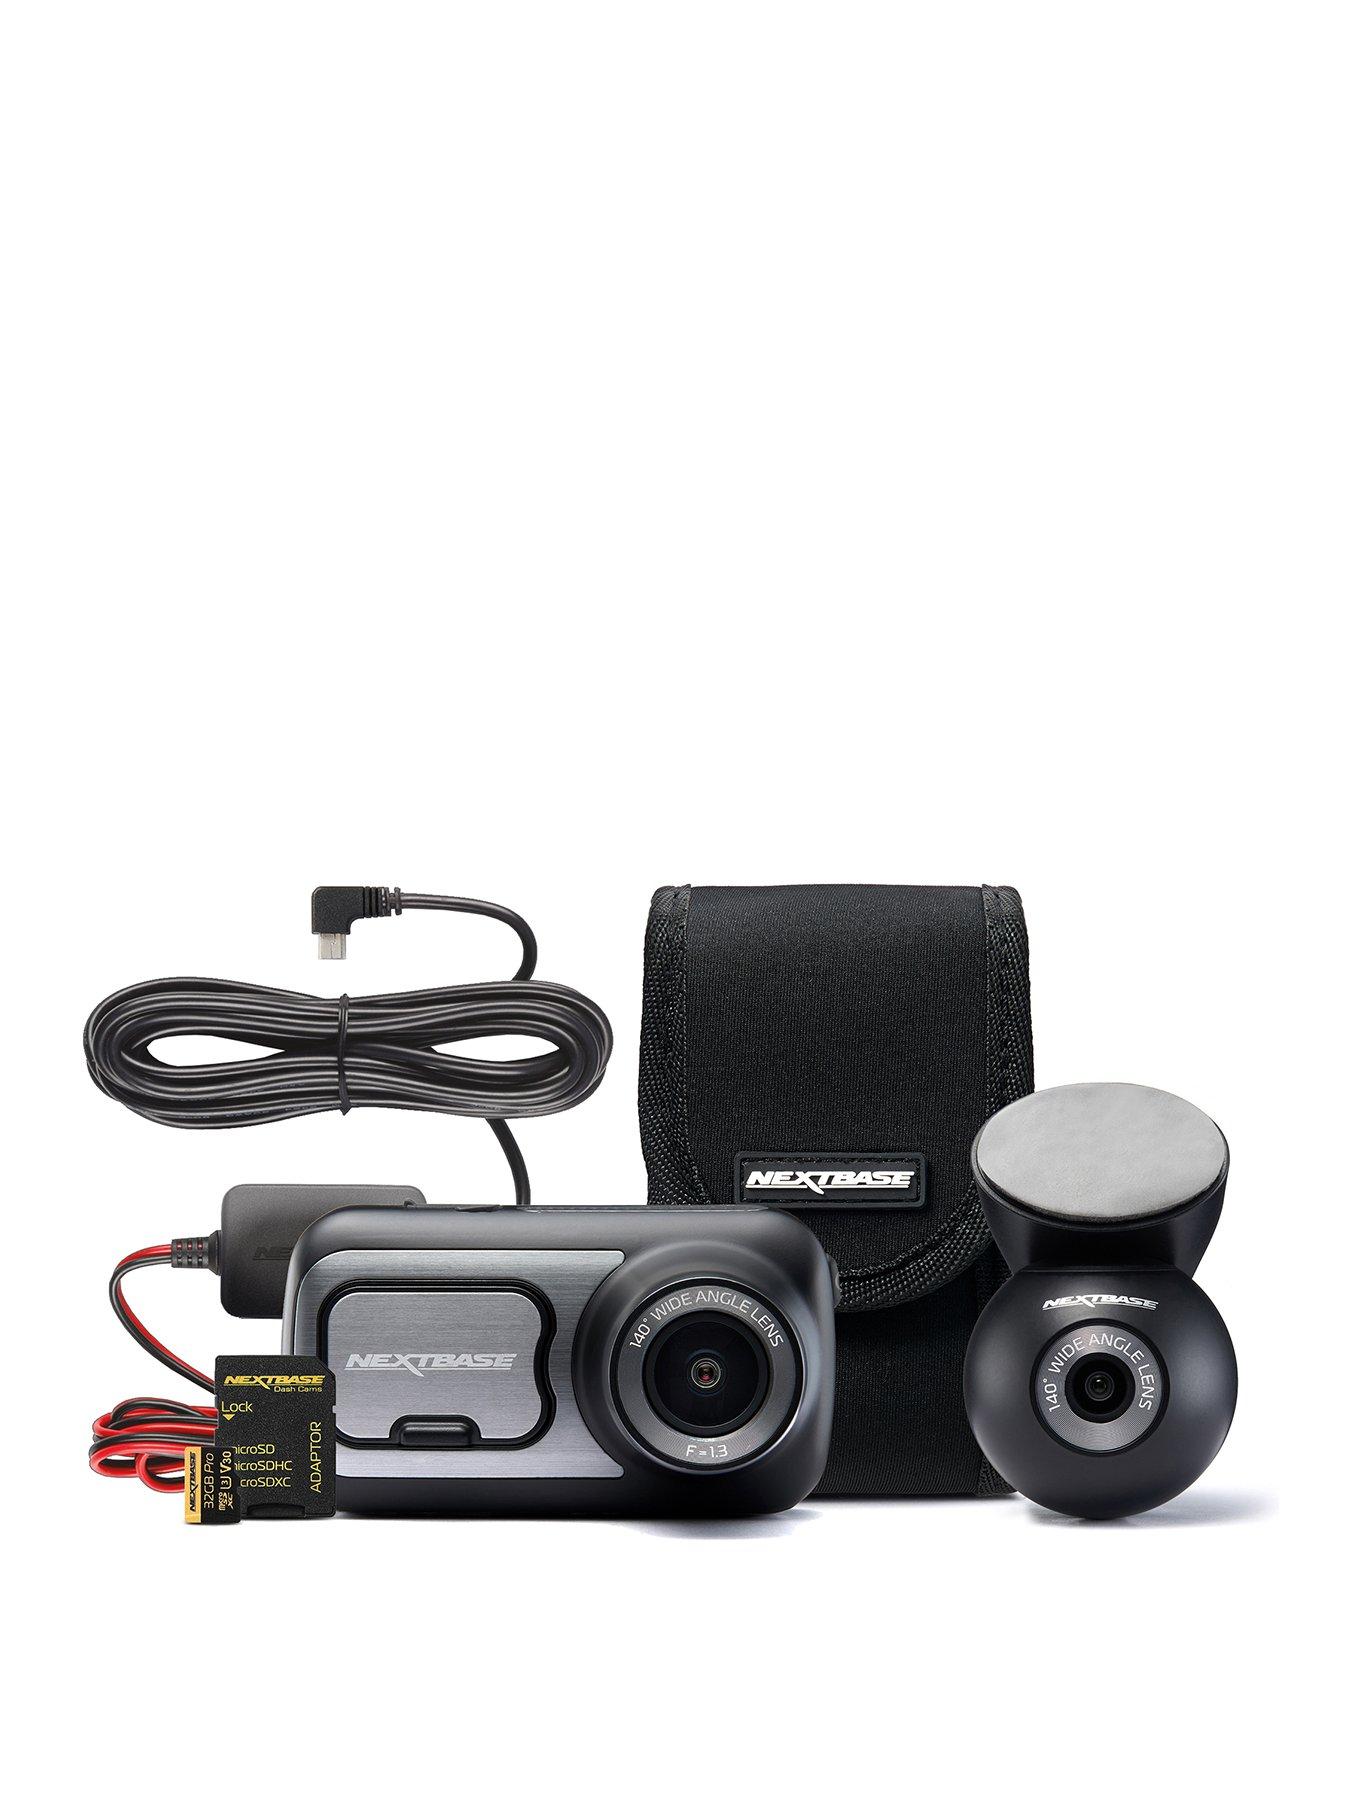 Nextbase 422 Dash Cam Exclusive Bundle with Rear Camera, 32GB